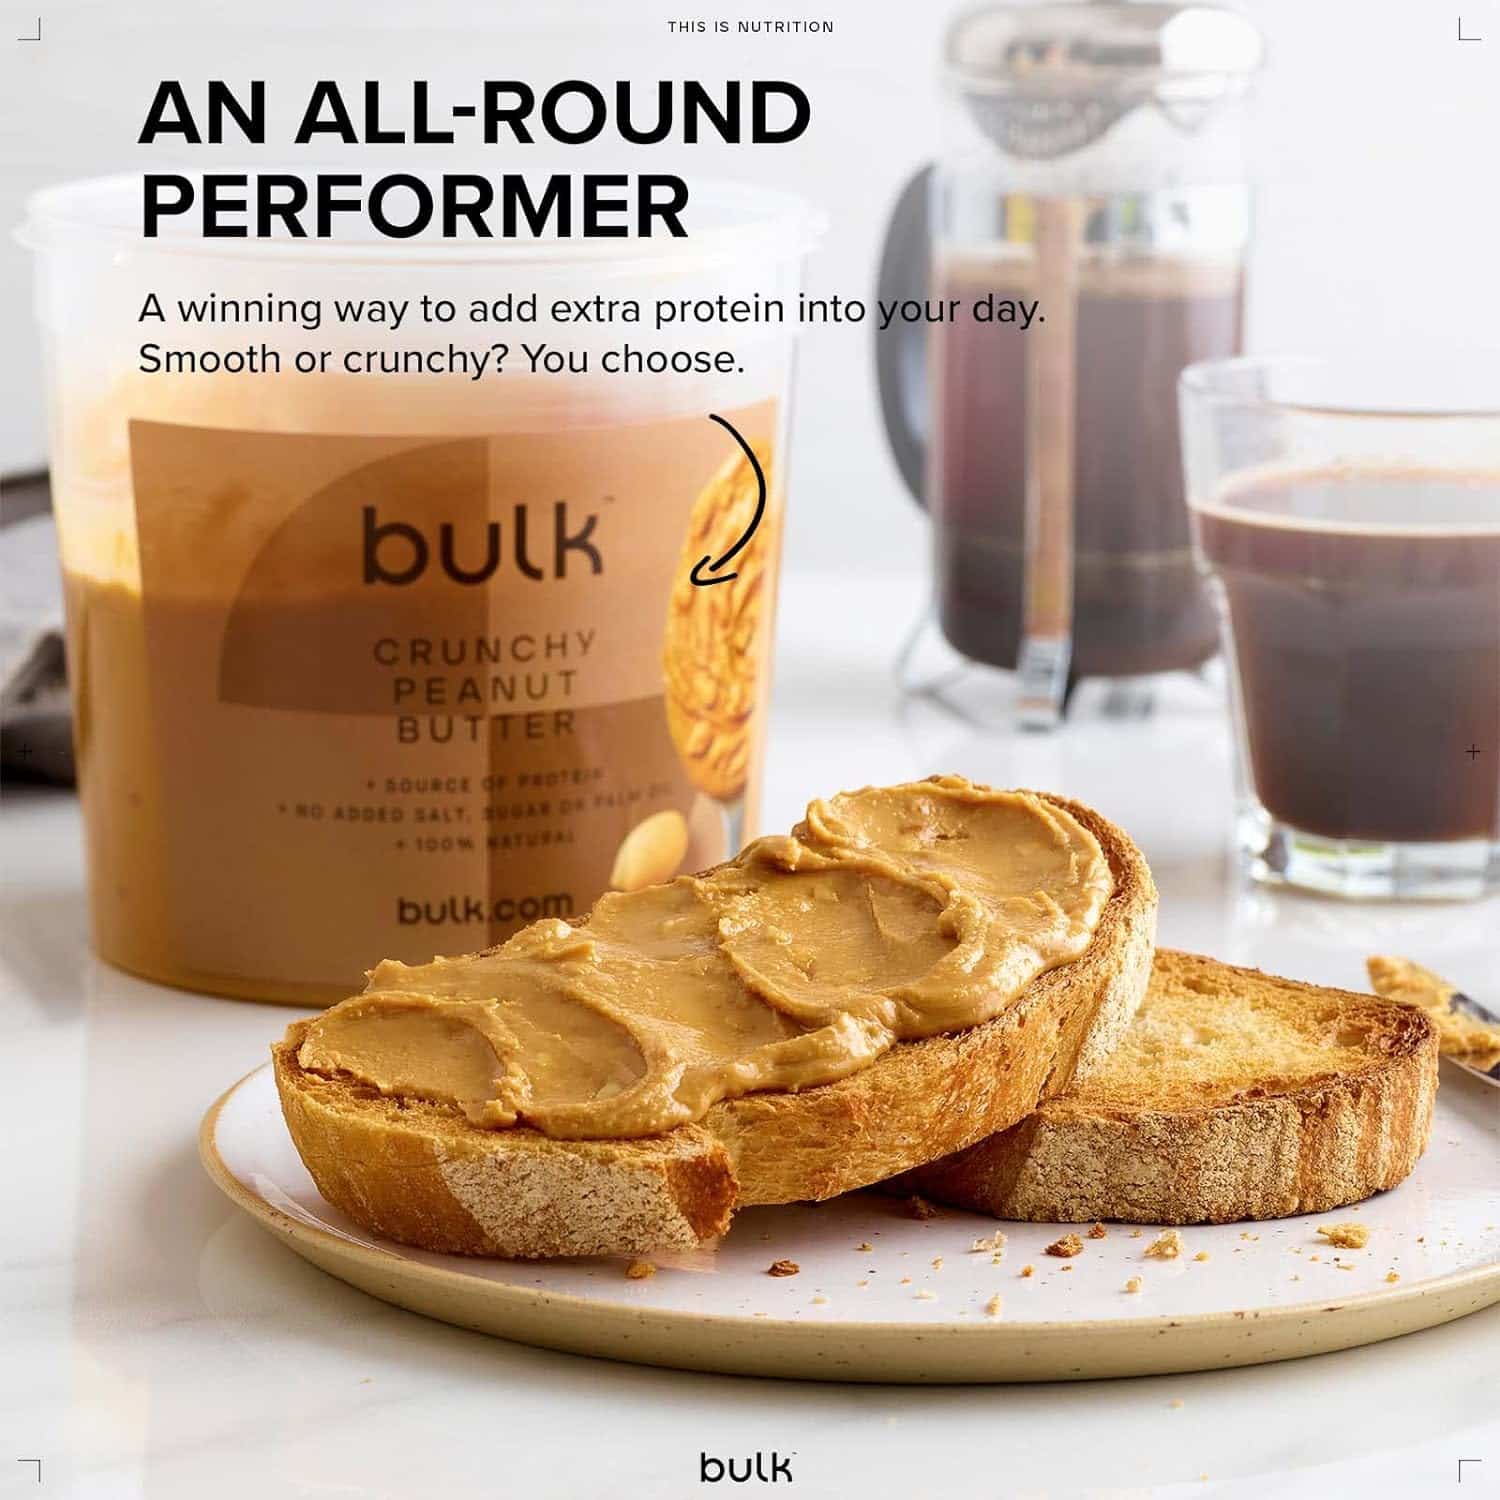 Bulk Natural Roasted Peanut Butter Tub, Crunchy, 1 kg-Exp: 17/07/2024-0150